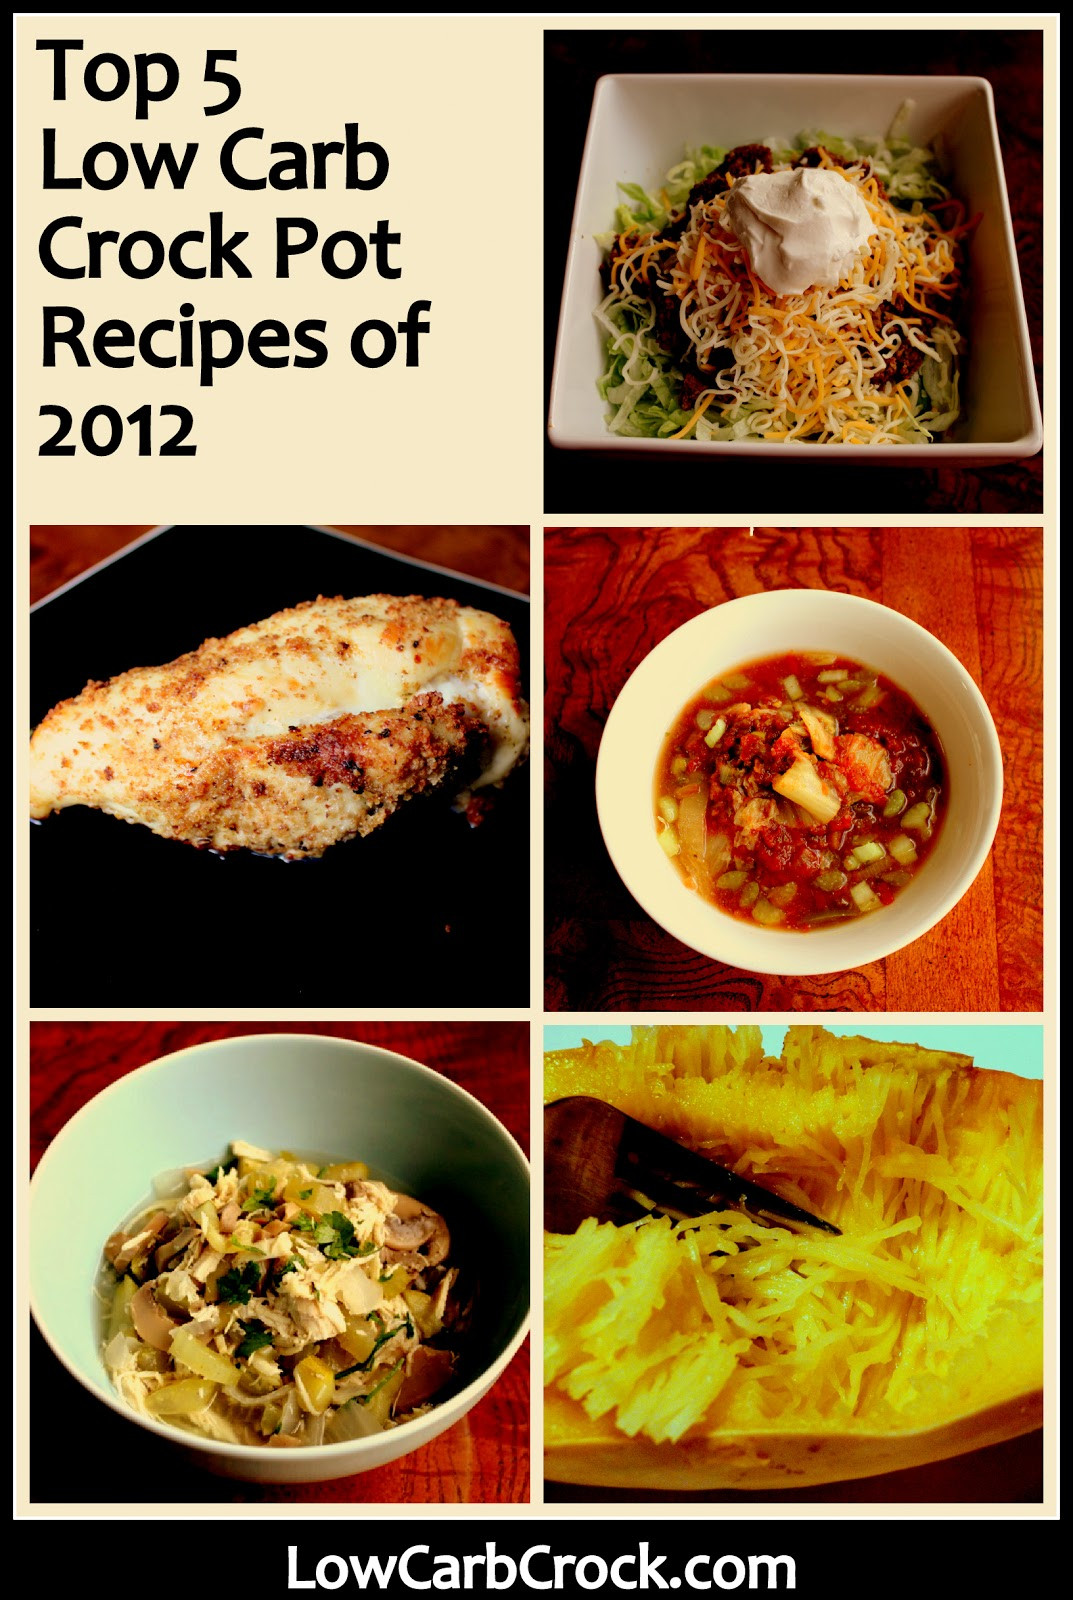 Low Carb Crockpot Recipes
 Top 5 Low Carb Crock Pot Recipes of 2012